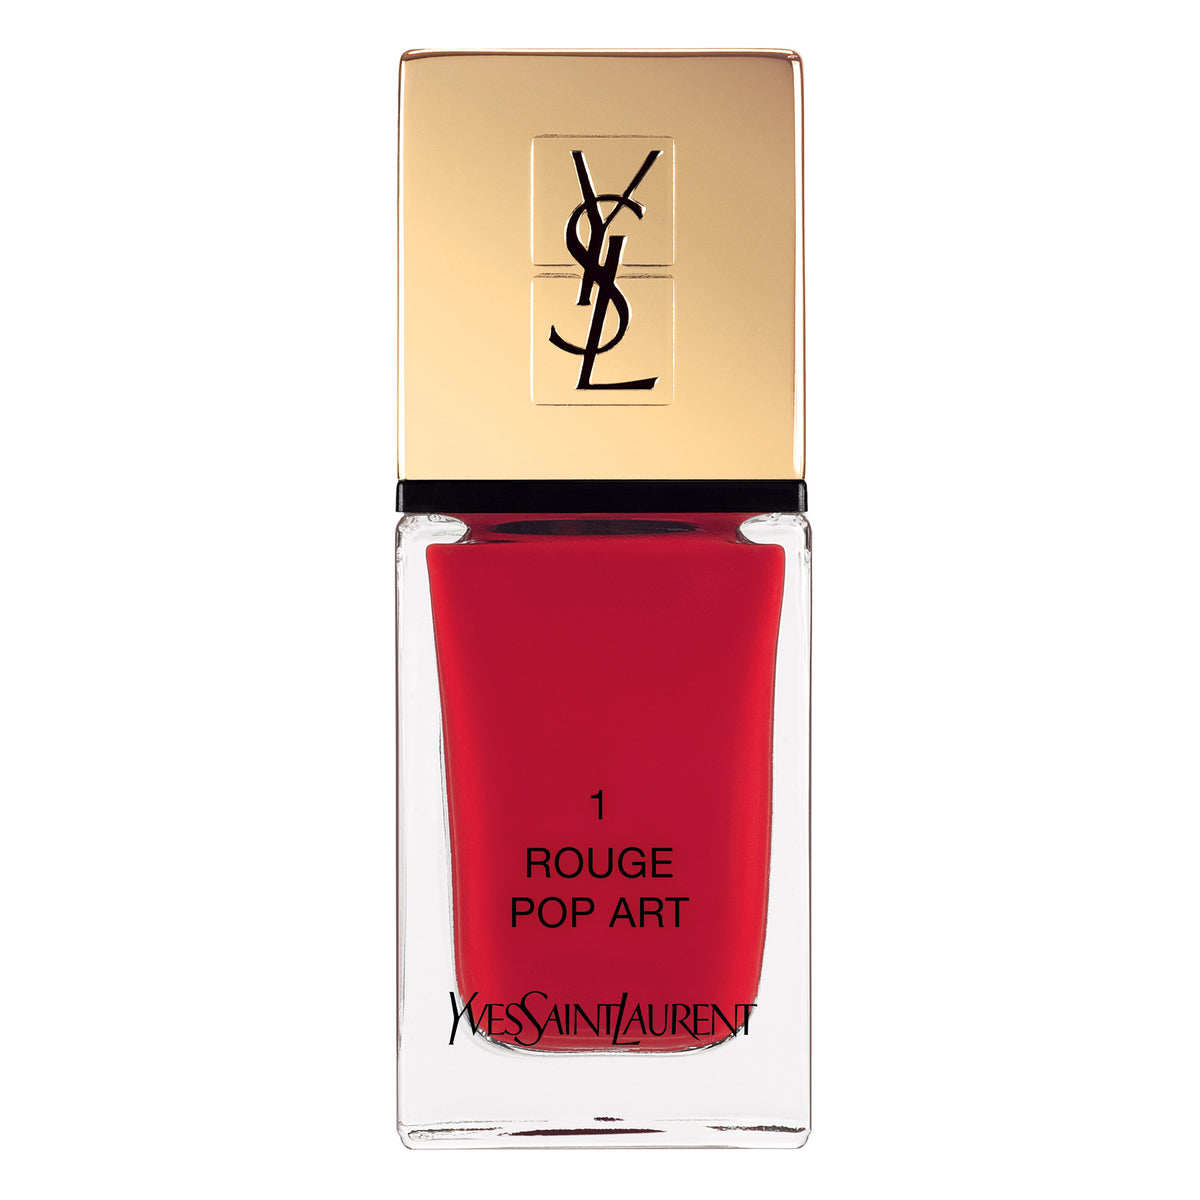 Yves Saint Laurent La Laque Couture Smalto N°01 - Rouge Pop Art